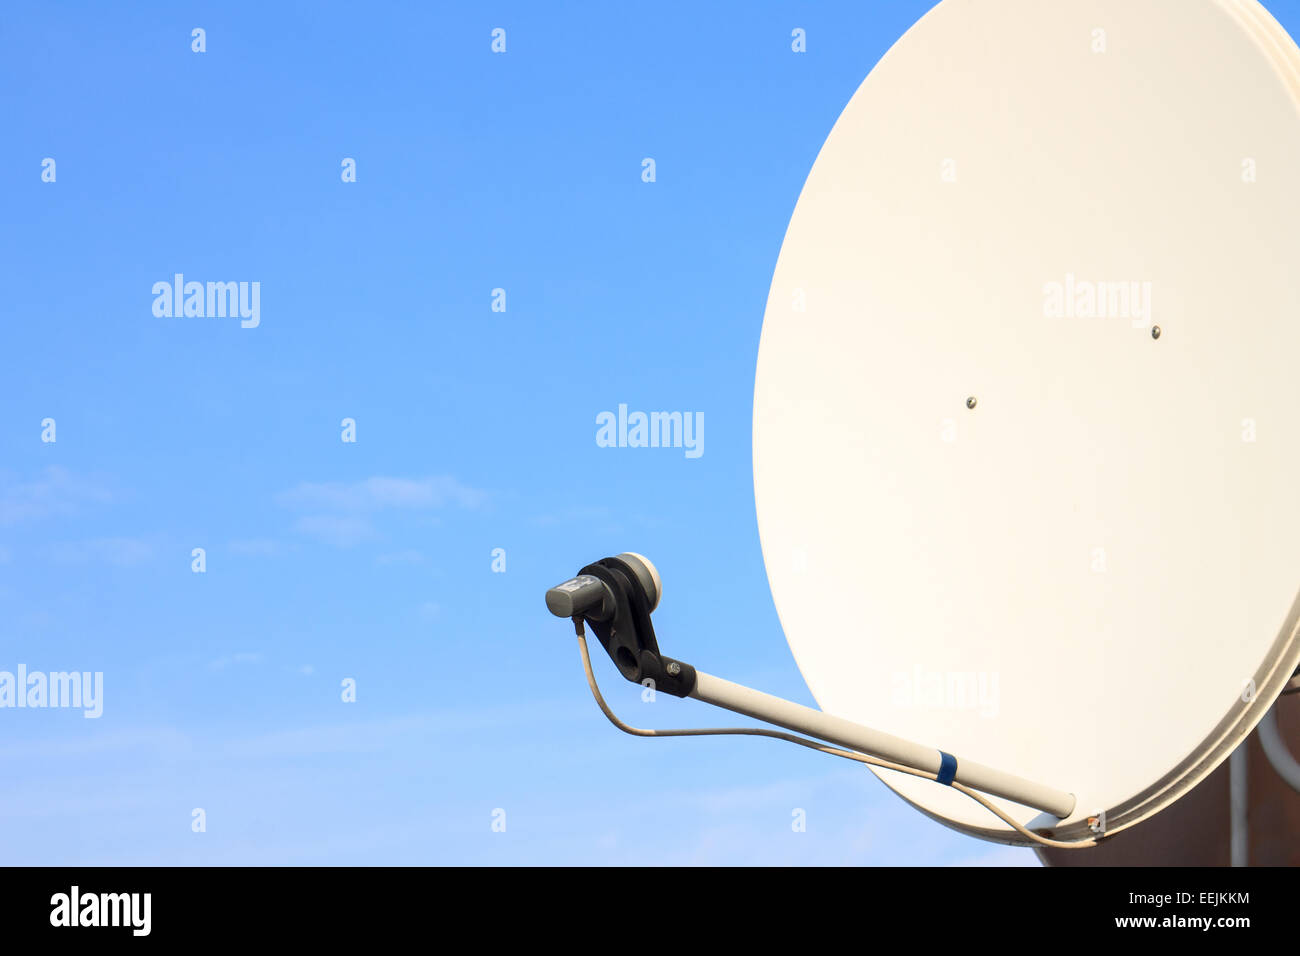 Satellite dish antenna on summer blue sky Stock Photo